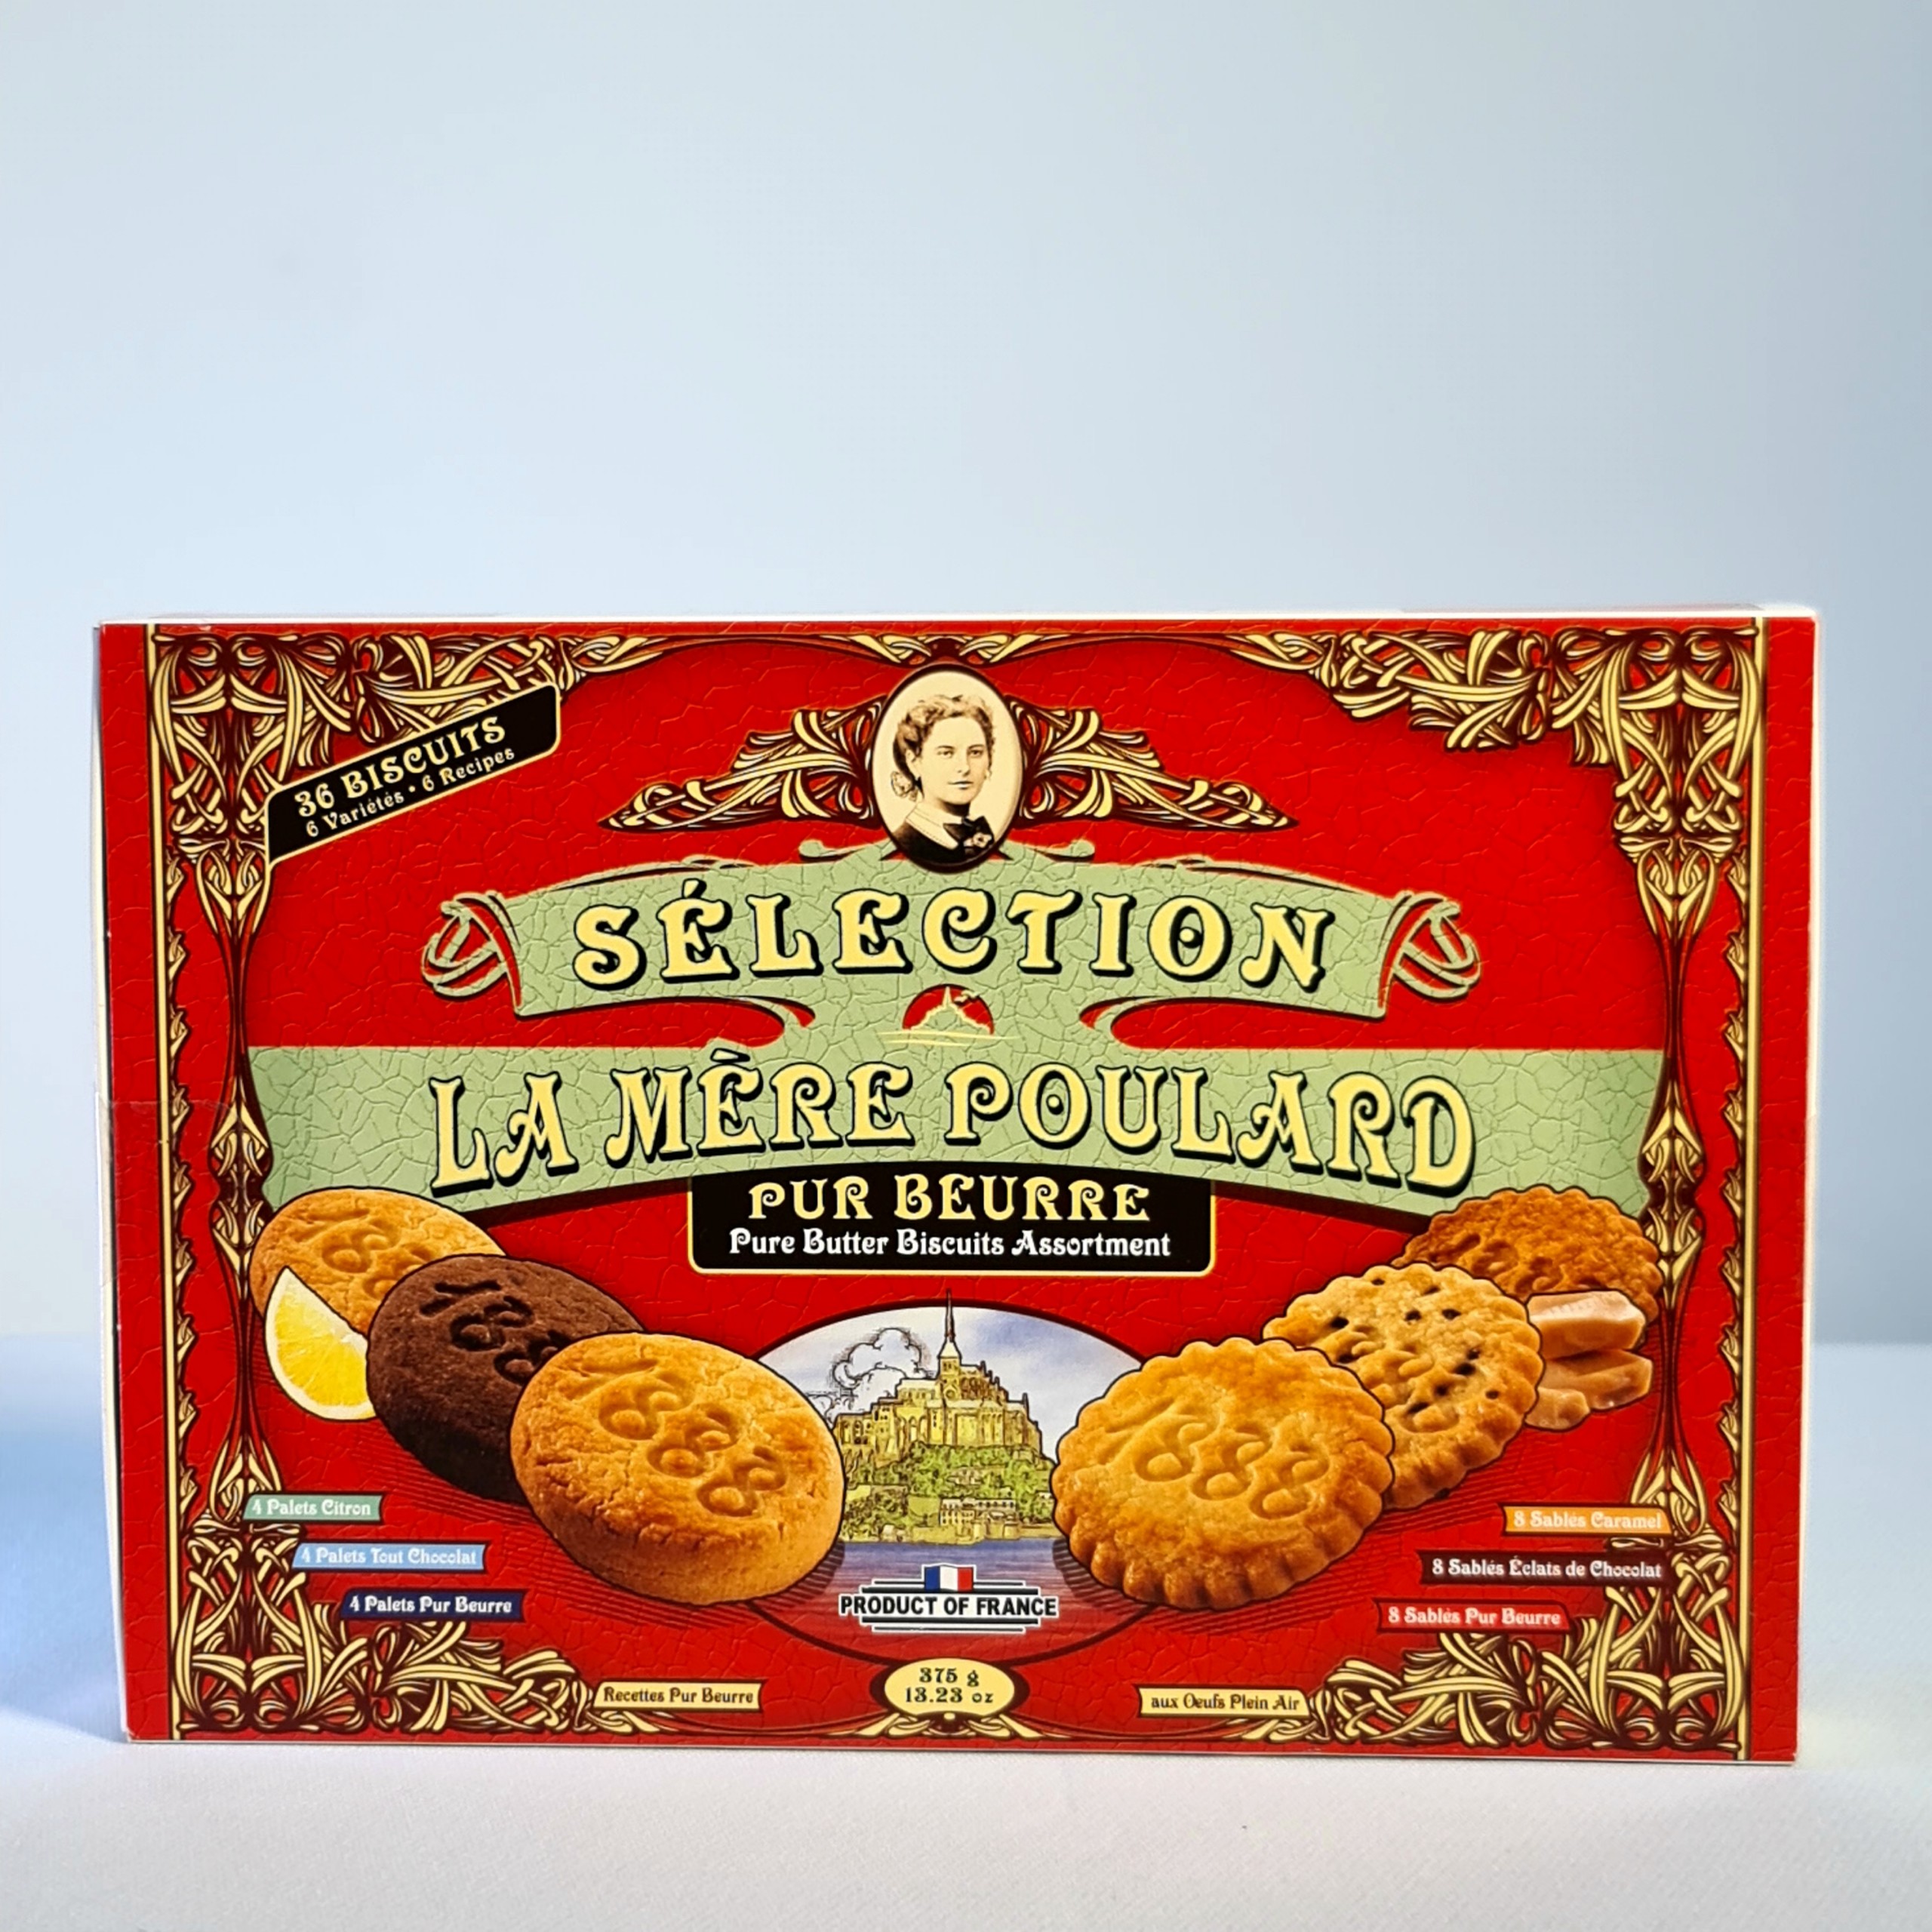 Bánh quy bơ - La Mère Poulard - Pure Butter Biscuits Assortment 6 Varieties 375g